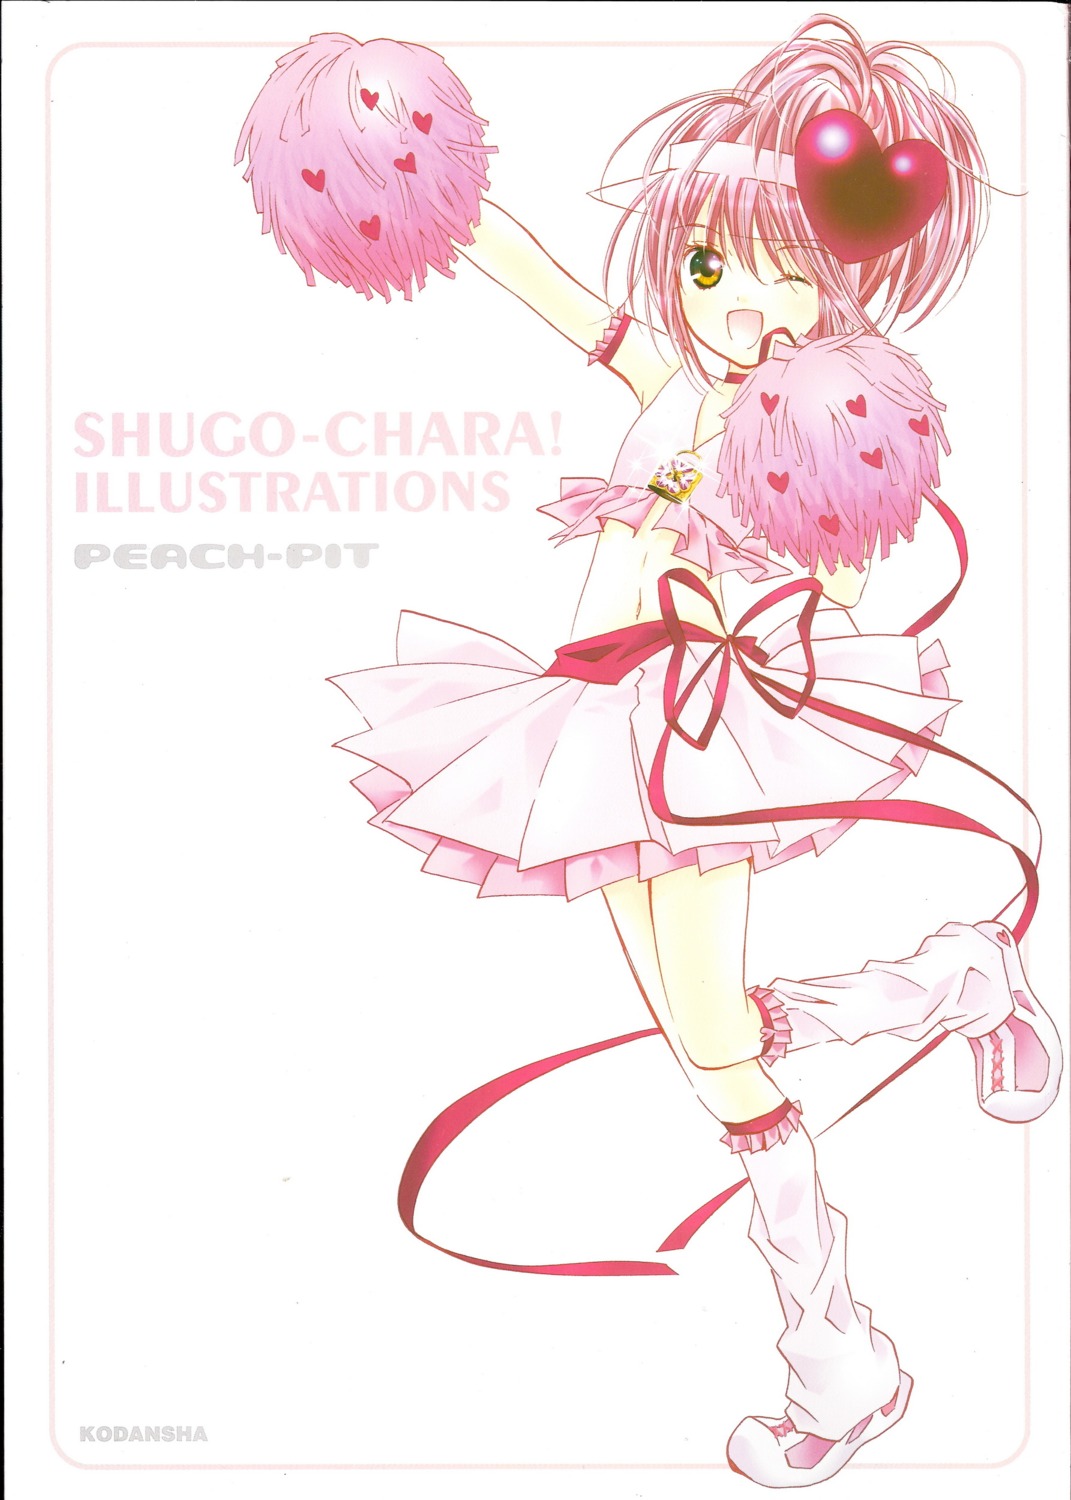 amulet_heart hinamori_amu peach-pit shugo_chara